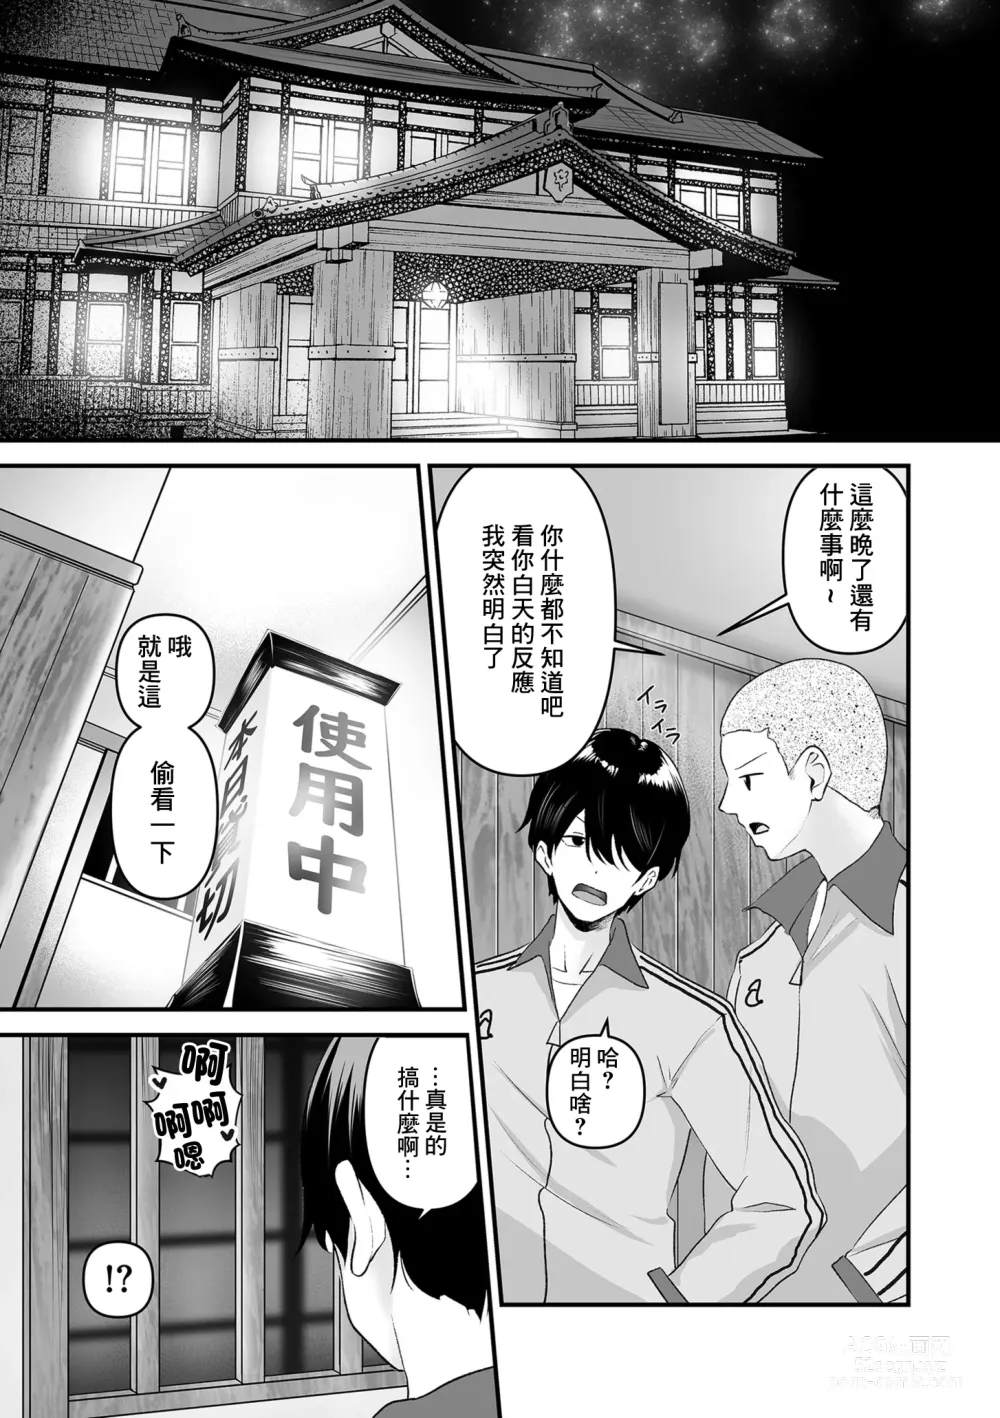 Page 3 of manga 集訓手淫對象